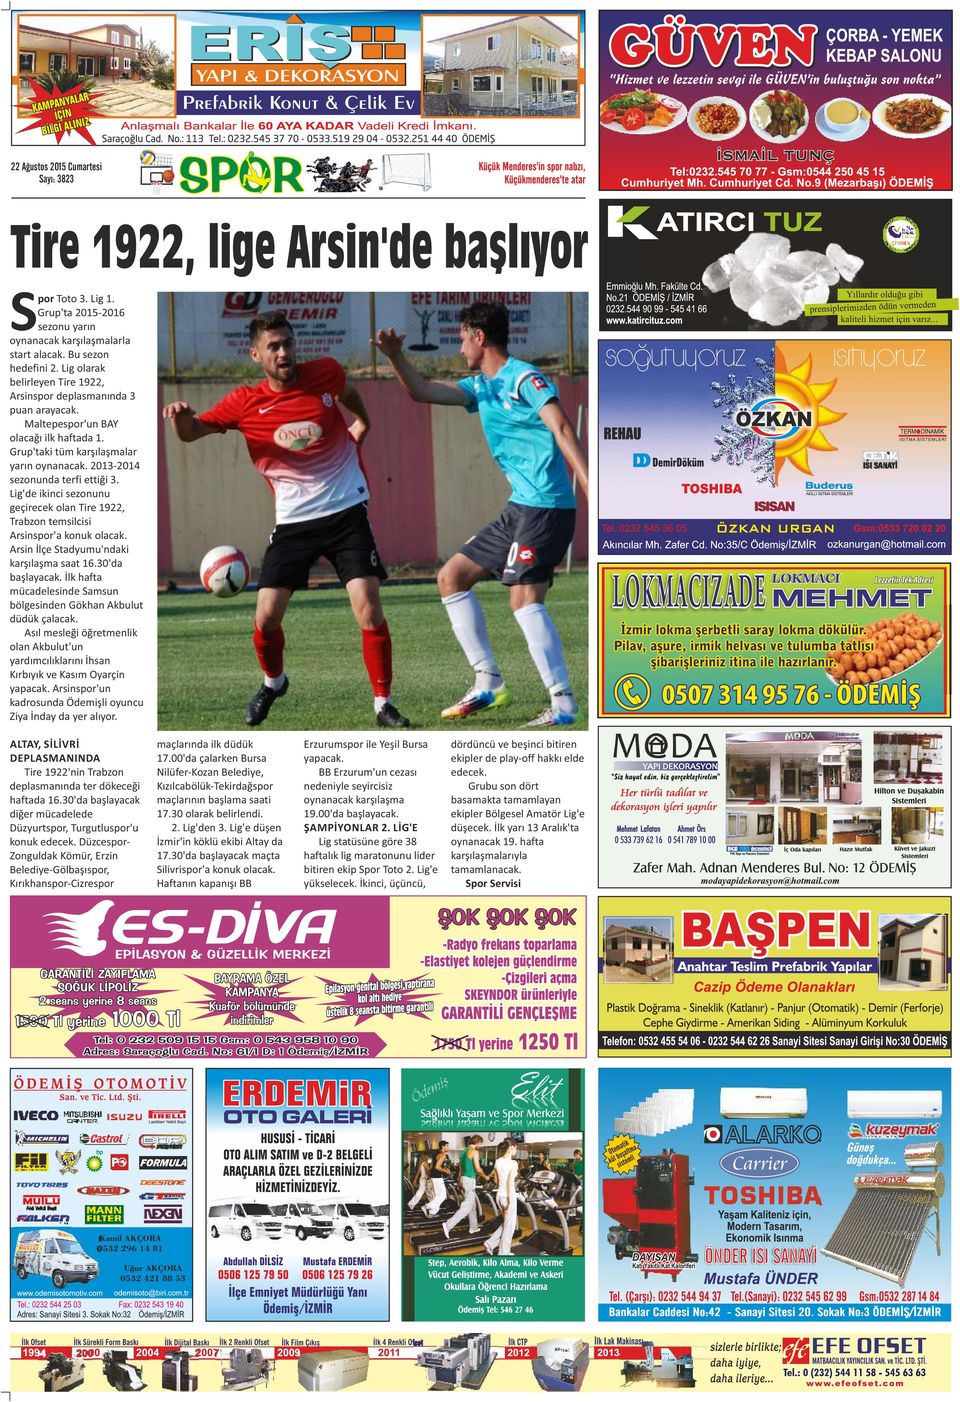 Lig'de ikinci sezonunu geçirecek olan Tire 1922, Trabzon temsilcisi Arsinspor'a konuk olacak. Arsin İlçe Stadyumu'ndaki karşılaşma saat 16.30'da başlayacak.